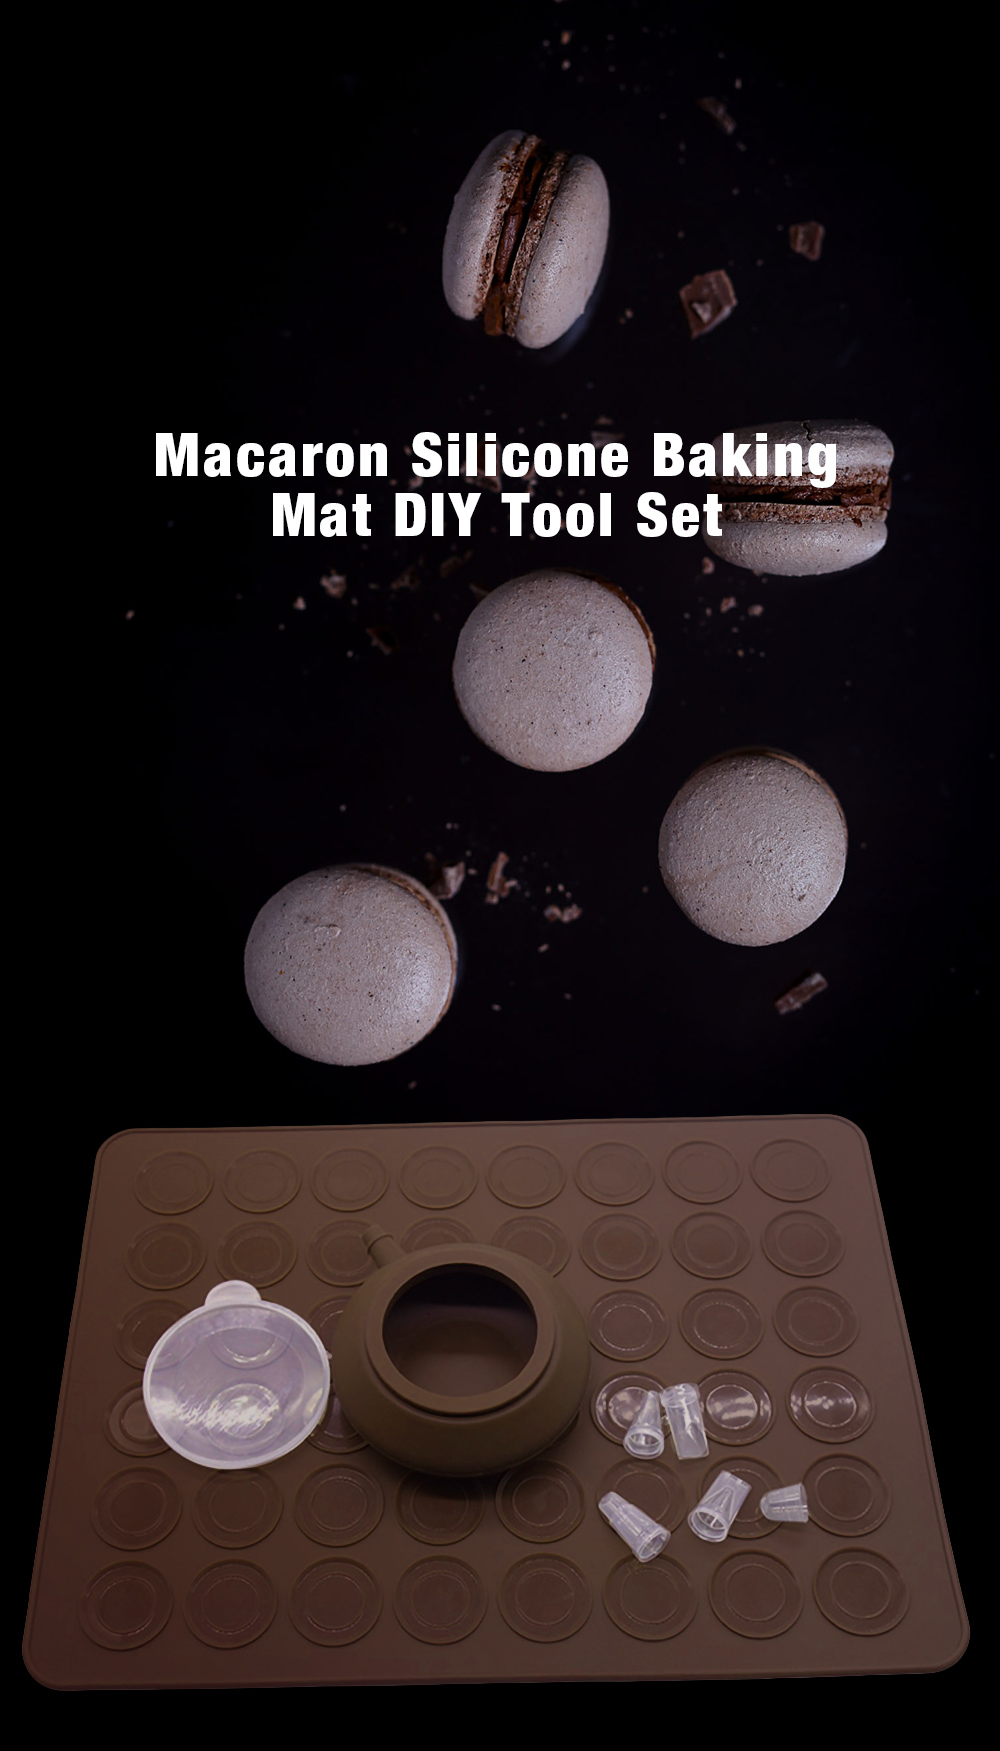 Macaron Silicone Baking Mat DIY Tool Set